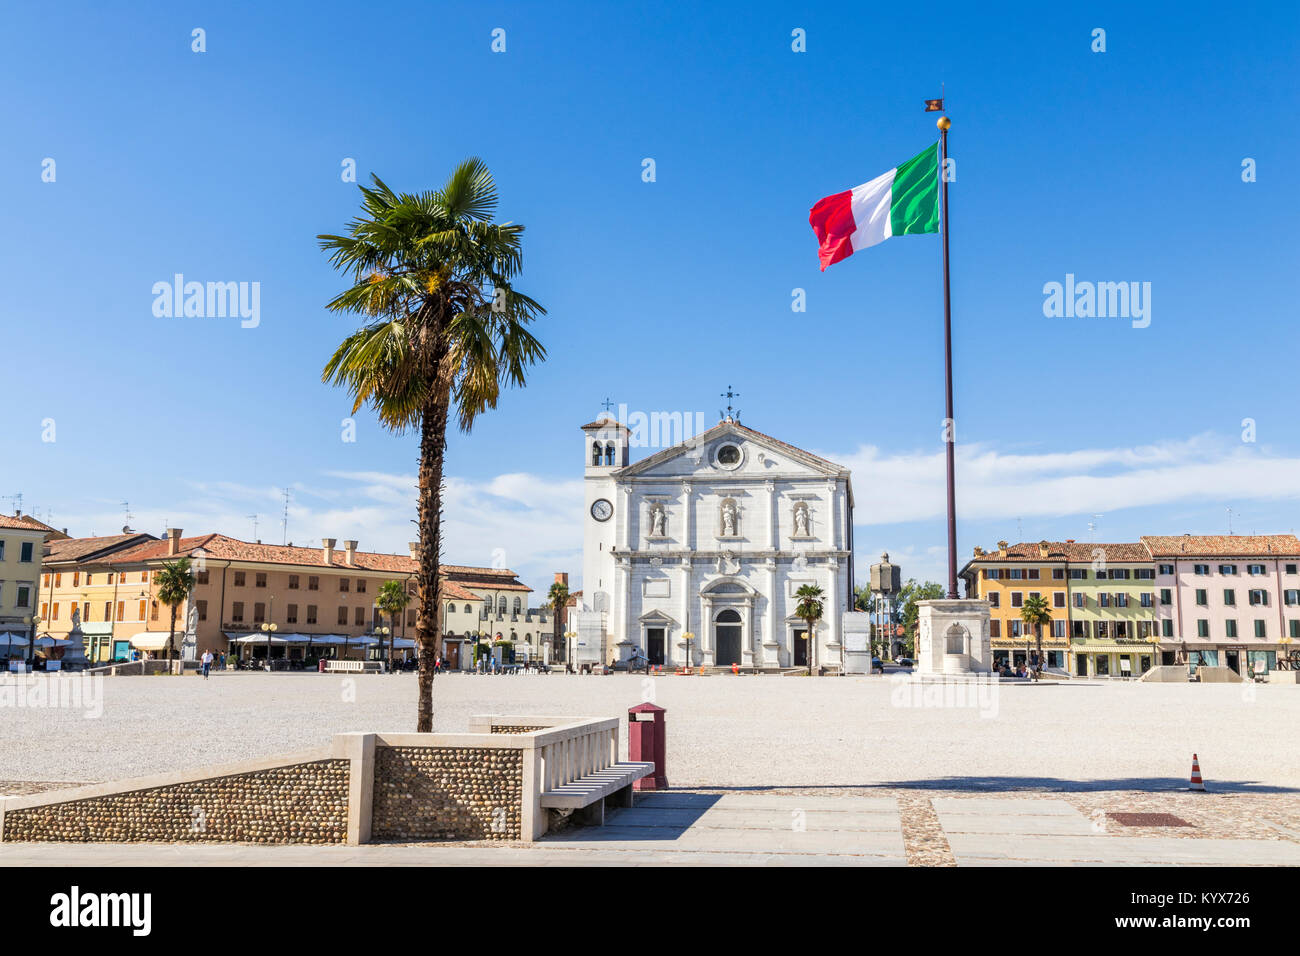 La Piazza Grande di Palmanova, Italia, con la Chiesa del Santissimo Redentore o Duomo. Un sito del Patrimonio mondiale dal 2017 come parte del Veneto wor Foto Stock